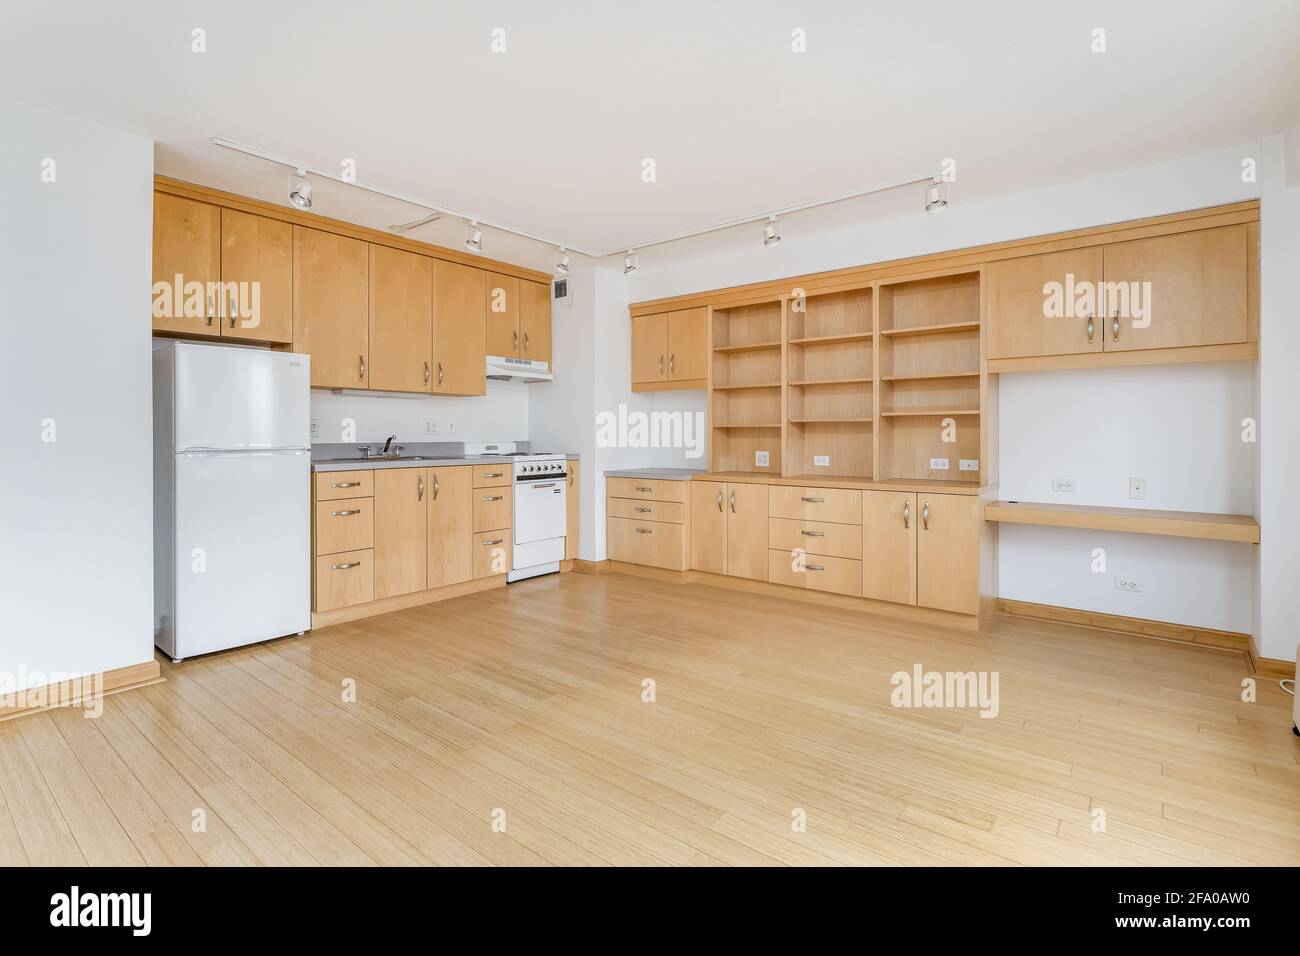 Una cucina d'acero in un appartamento di città vuoto con elettrodomestici bianchi, ripiani in granito, molti armadi per lo stoccaggio, e pavimenti in legno duro. Foto Stock